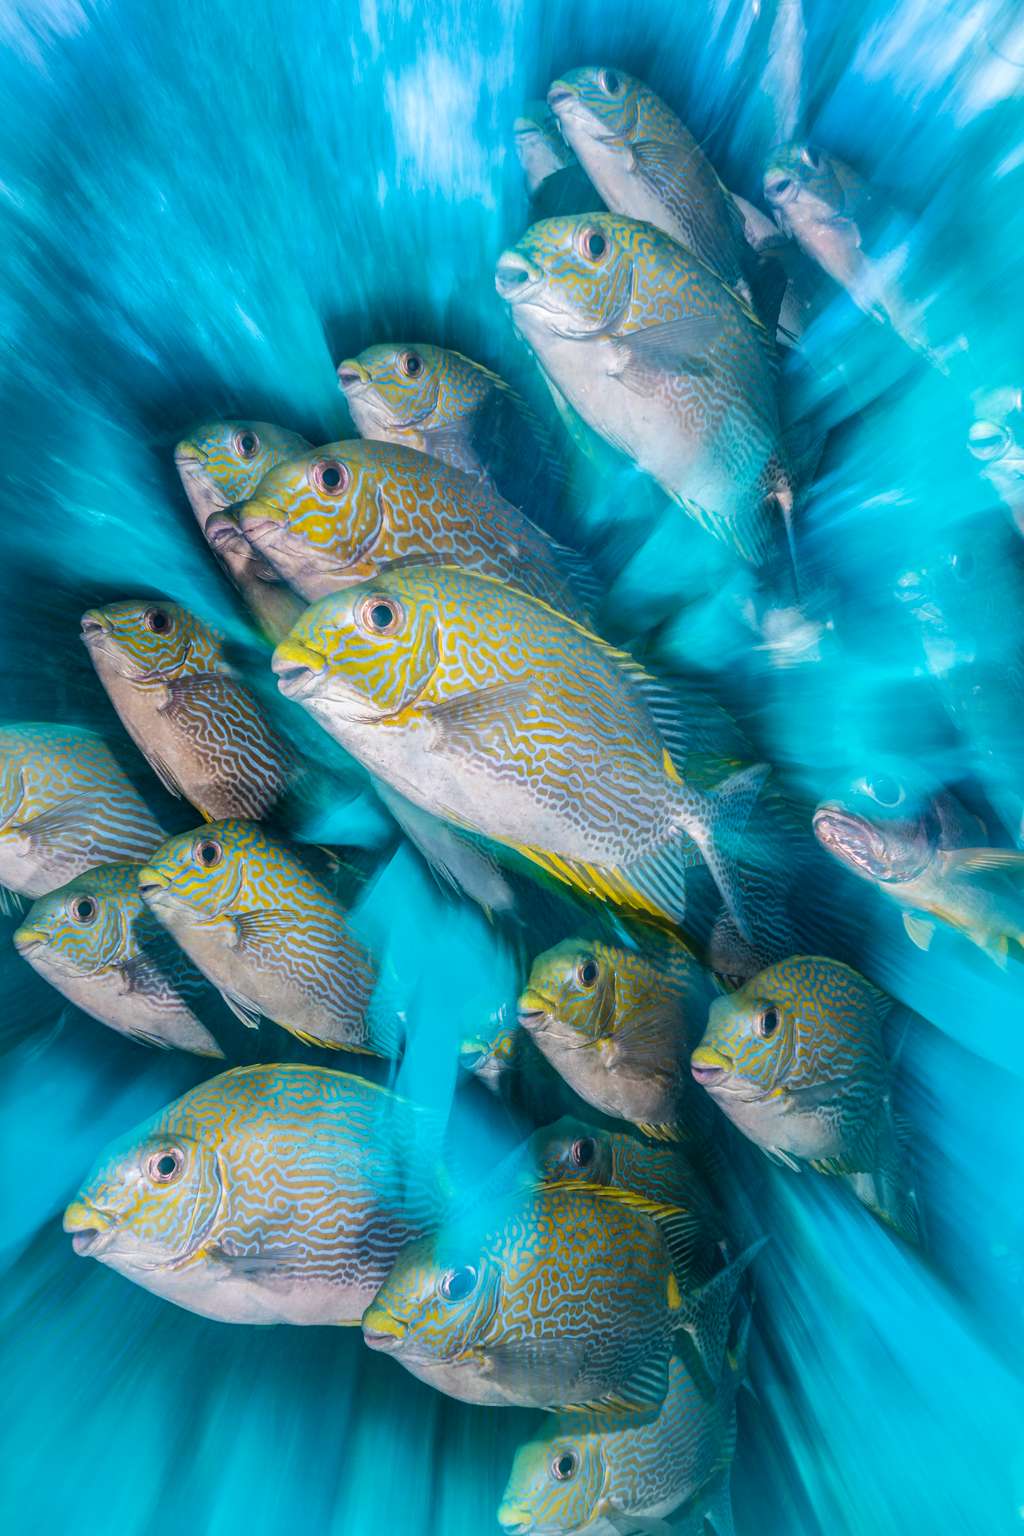 « <em>Zoom artistique sur le poisson-lapin</em> ». © Nicholas More, UPY 2020